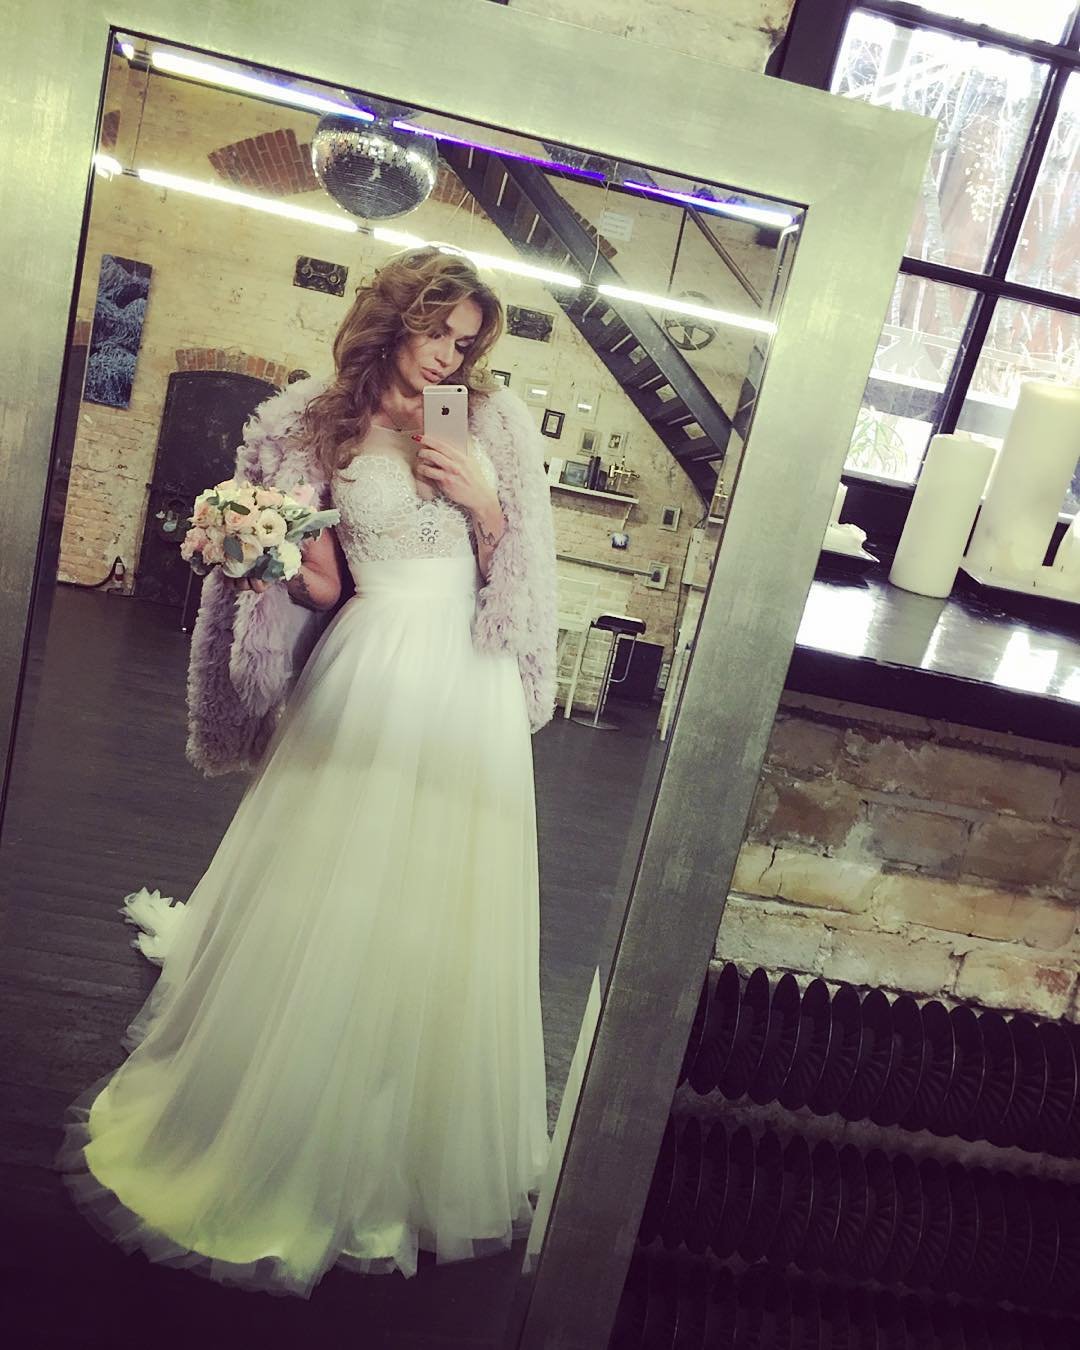 Алена Водонаева показала свое новое свадебное платье